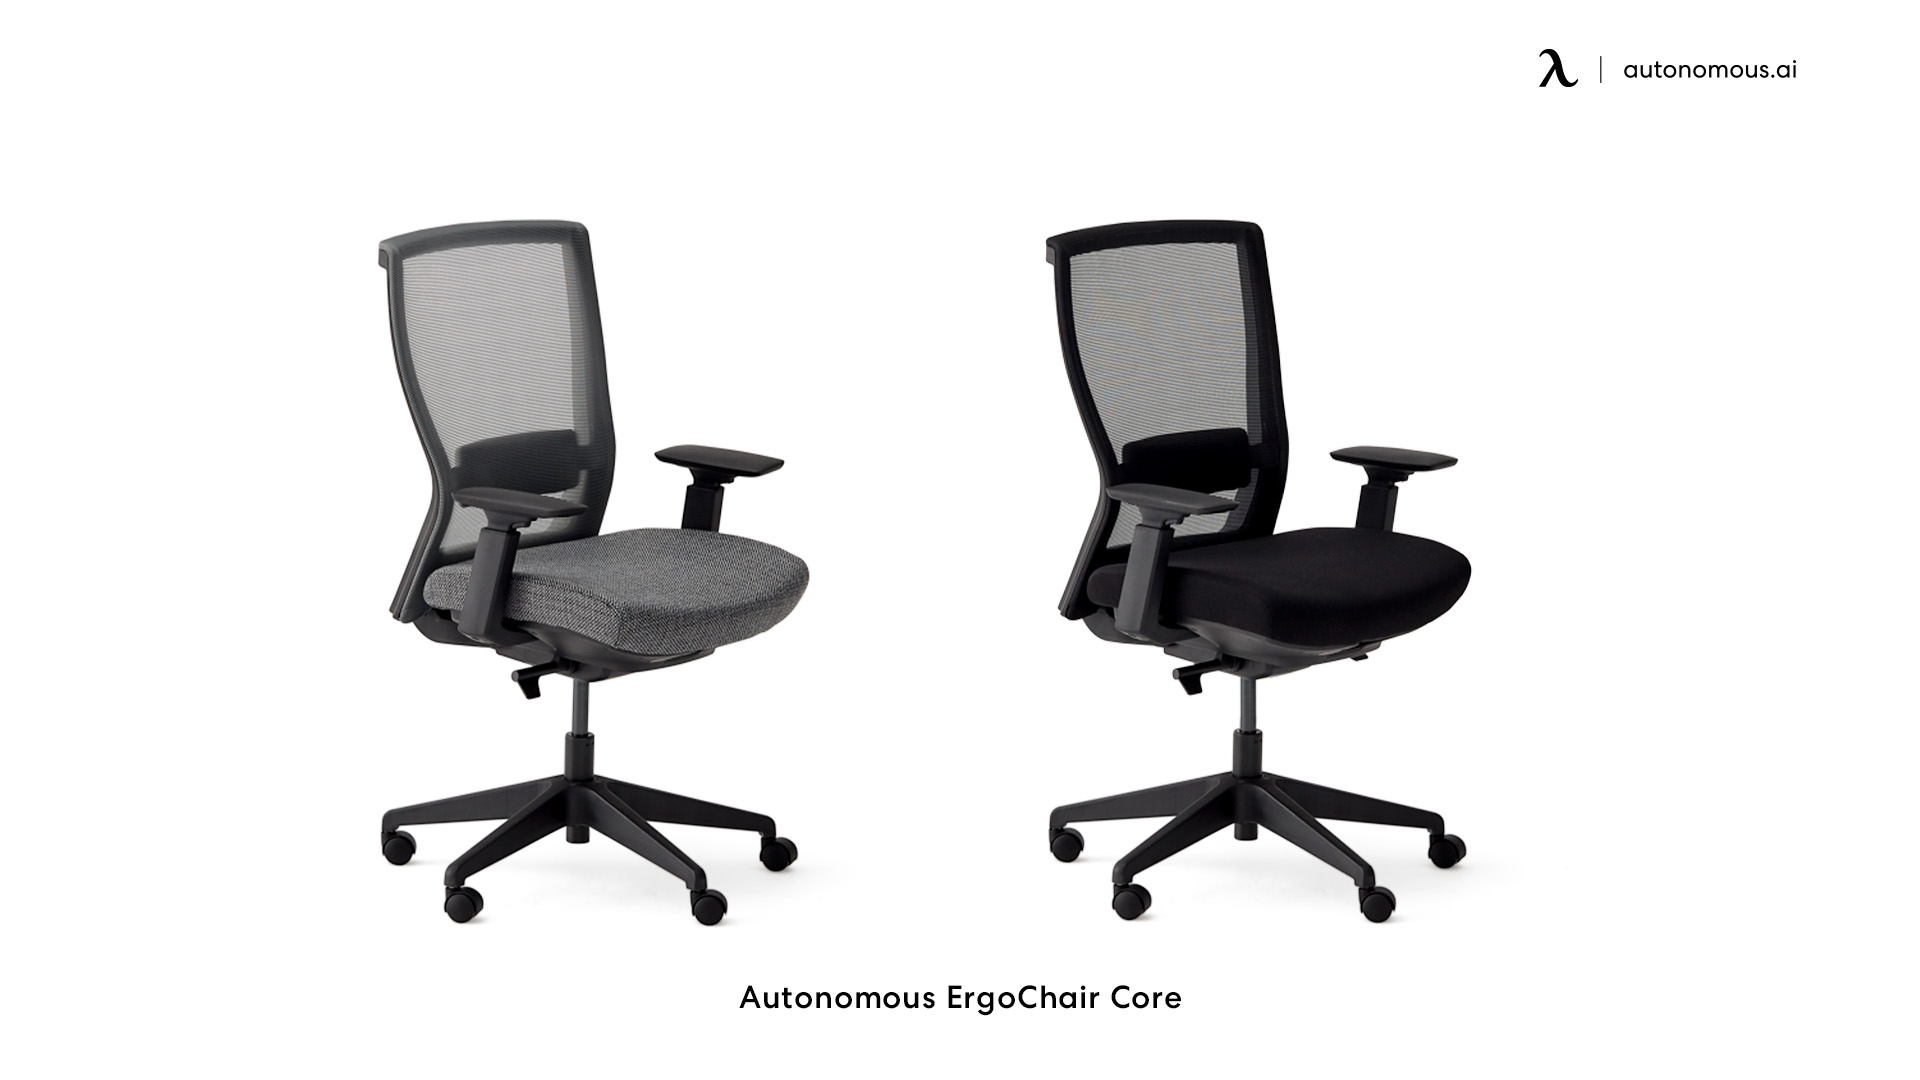 ErgoChair Core comfortable desk chair